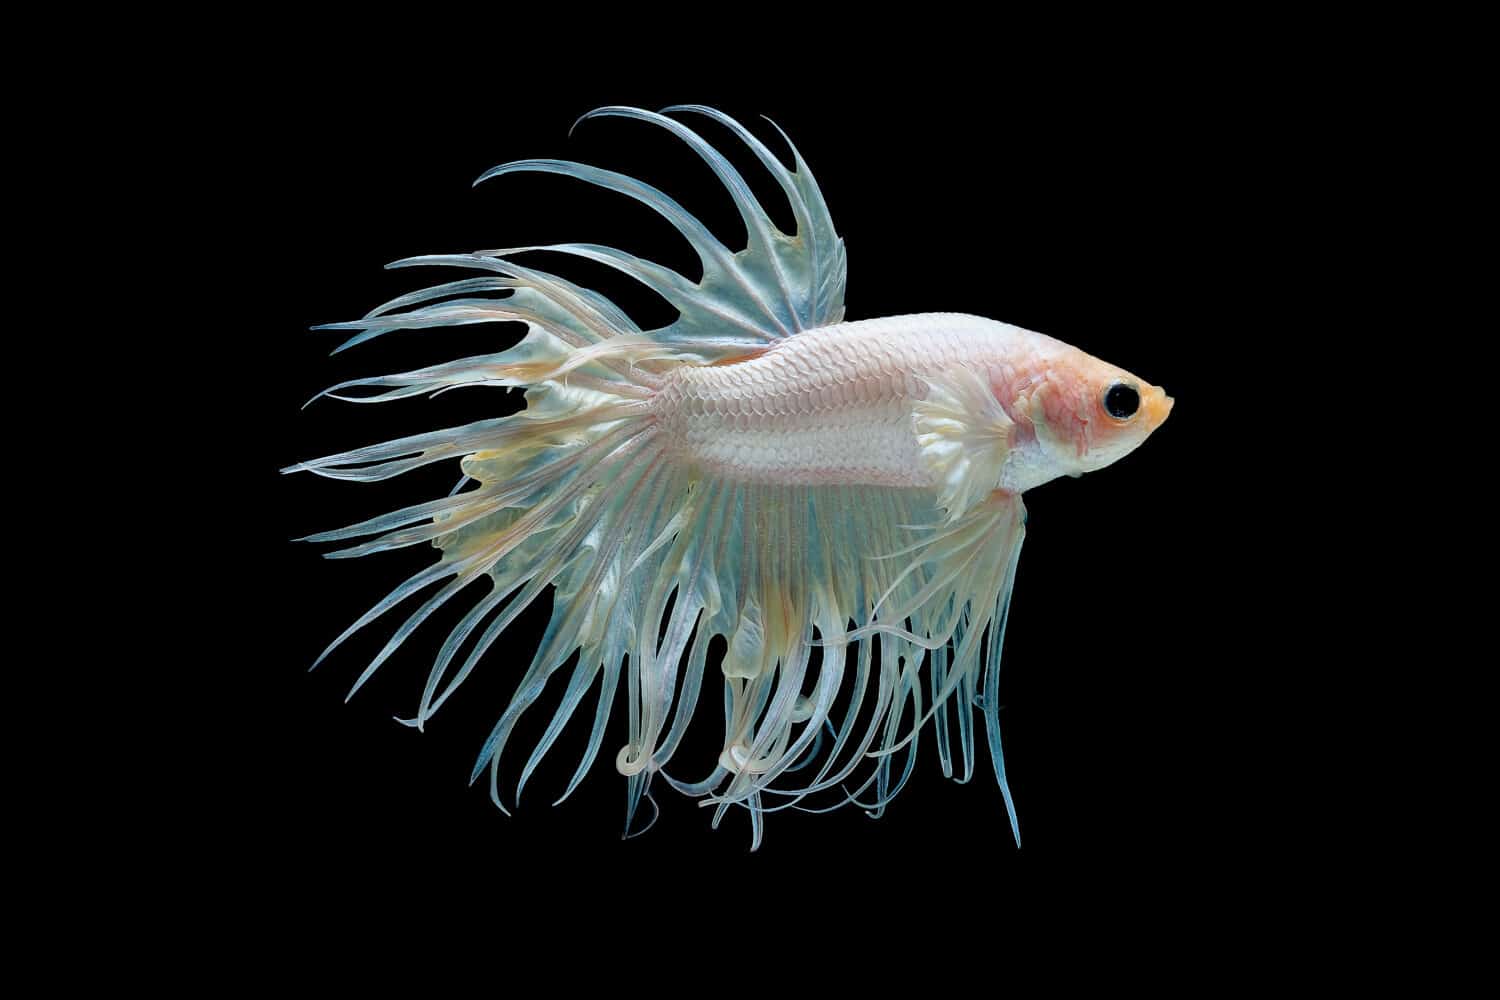 Pesce betta splendens bianco (Crown Tail), pesce combattente siamese con colore giallo chiaro isolato su sfondo nero. Il pesce inoltre gira la testa verso l'alto durante la nuotata.